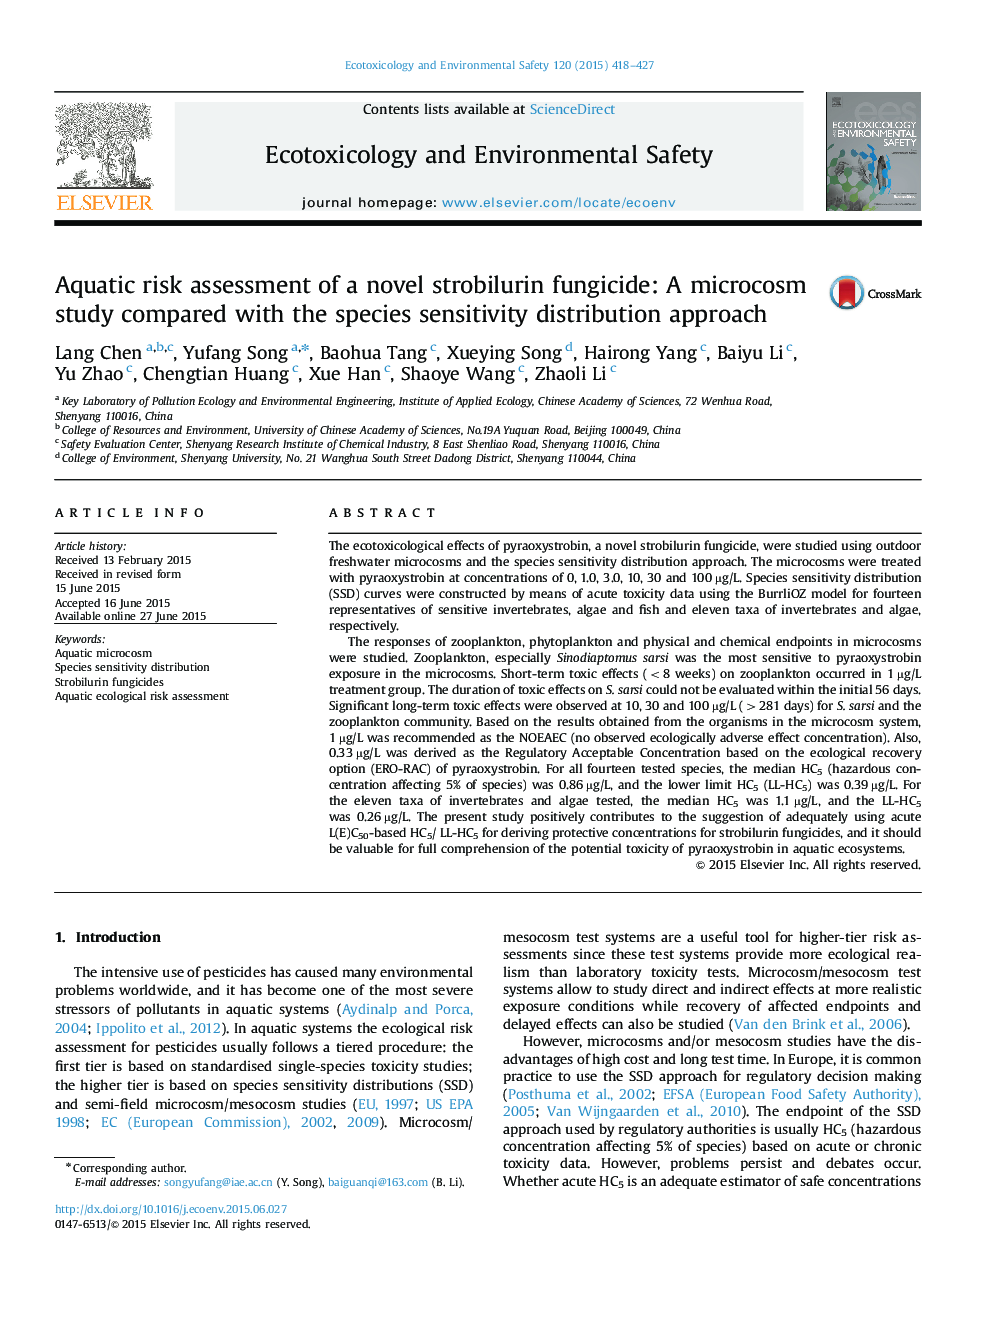 ارزیابی خطر آبیاری یک قارچ کش از استروبیلوئورین جدید: مطالعه میکروکوزم در مقایسه با روش توزیع حساسیت گونه 